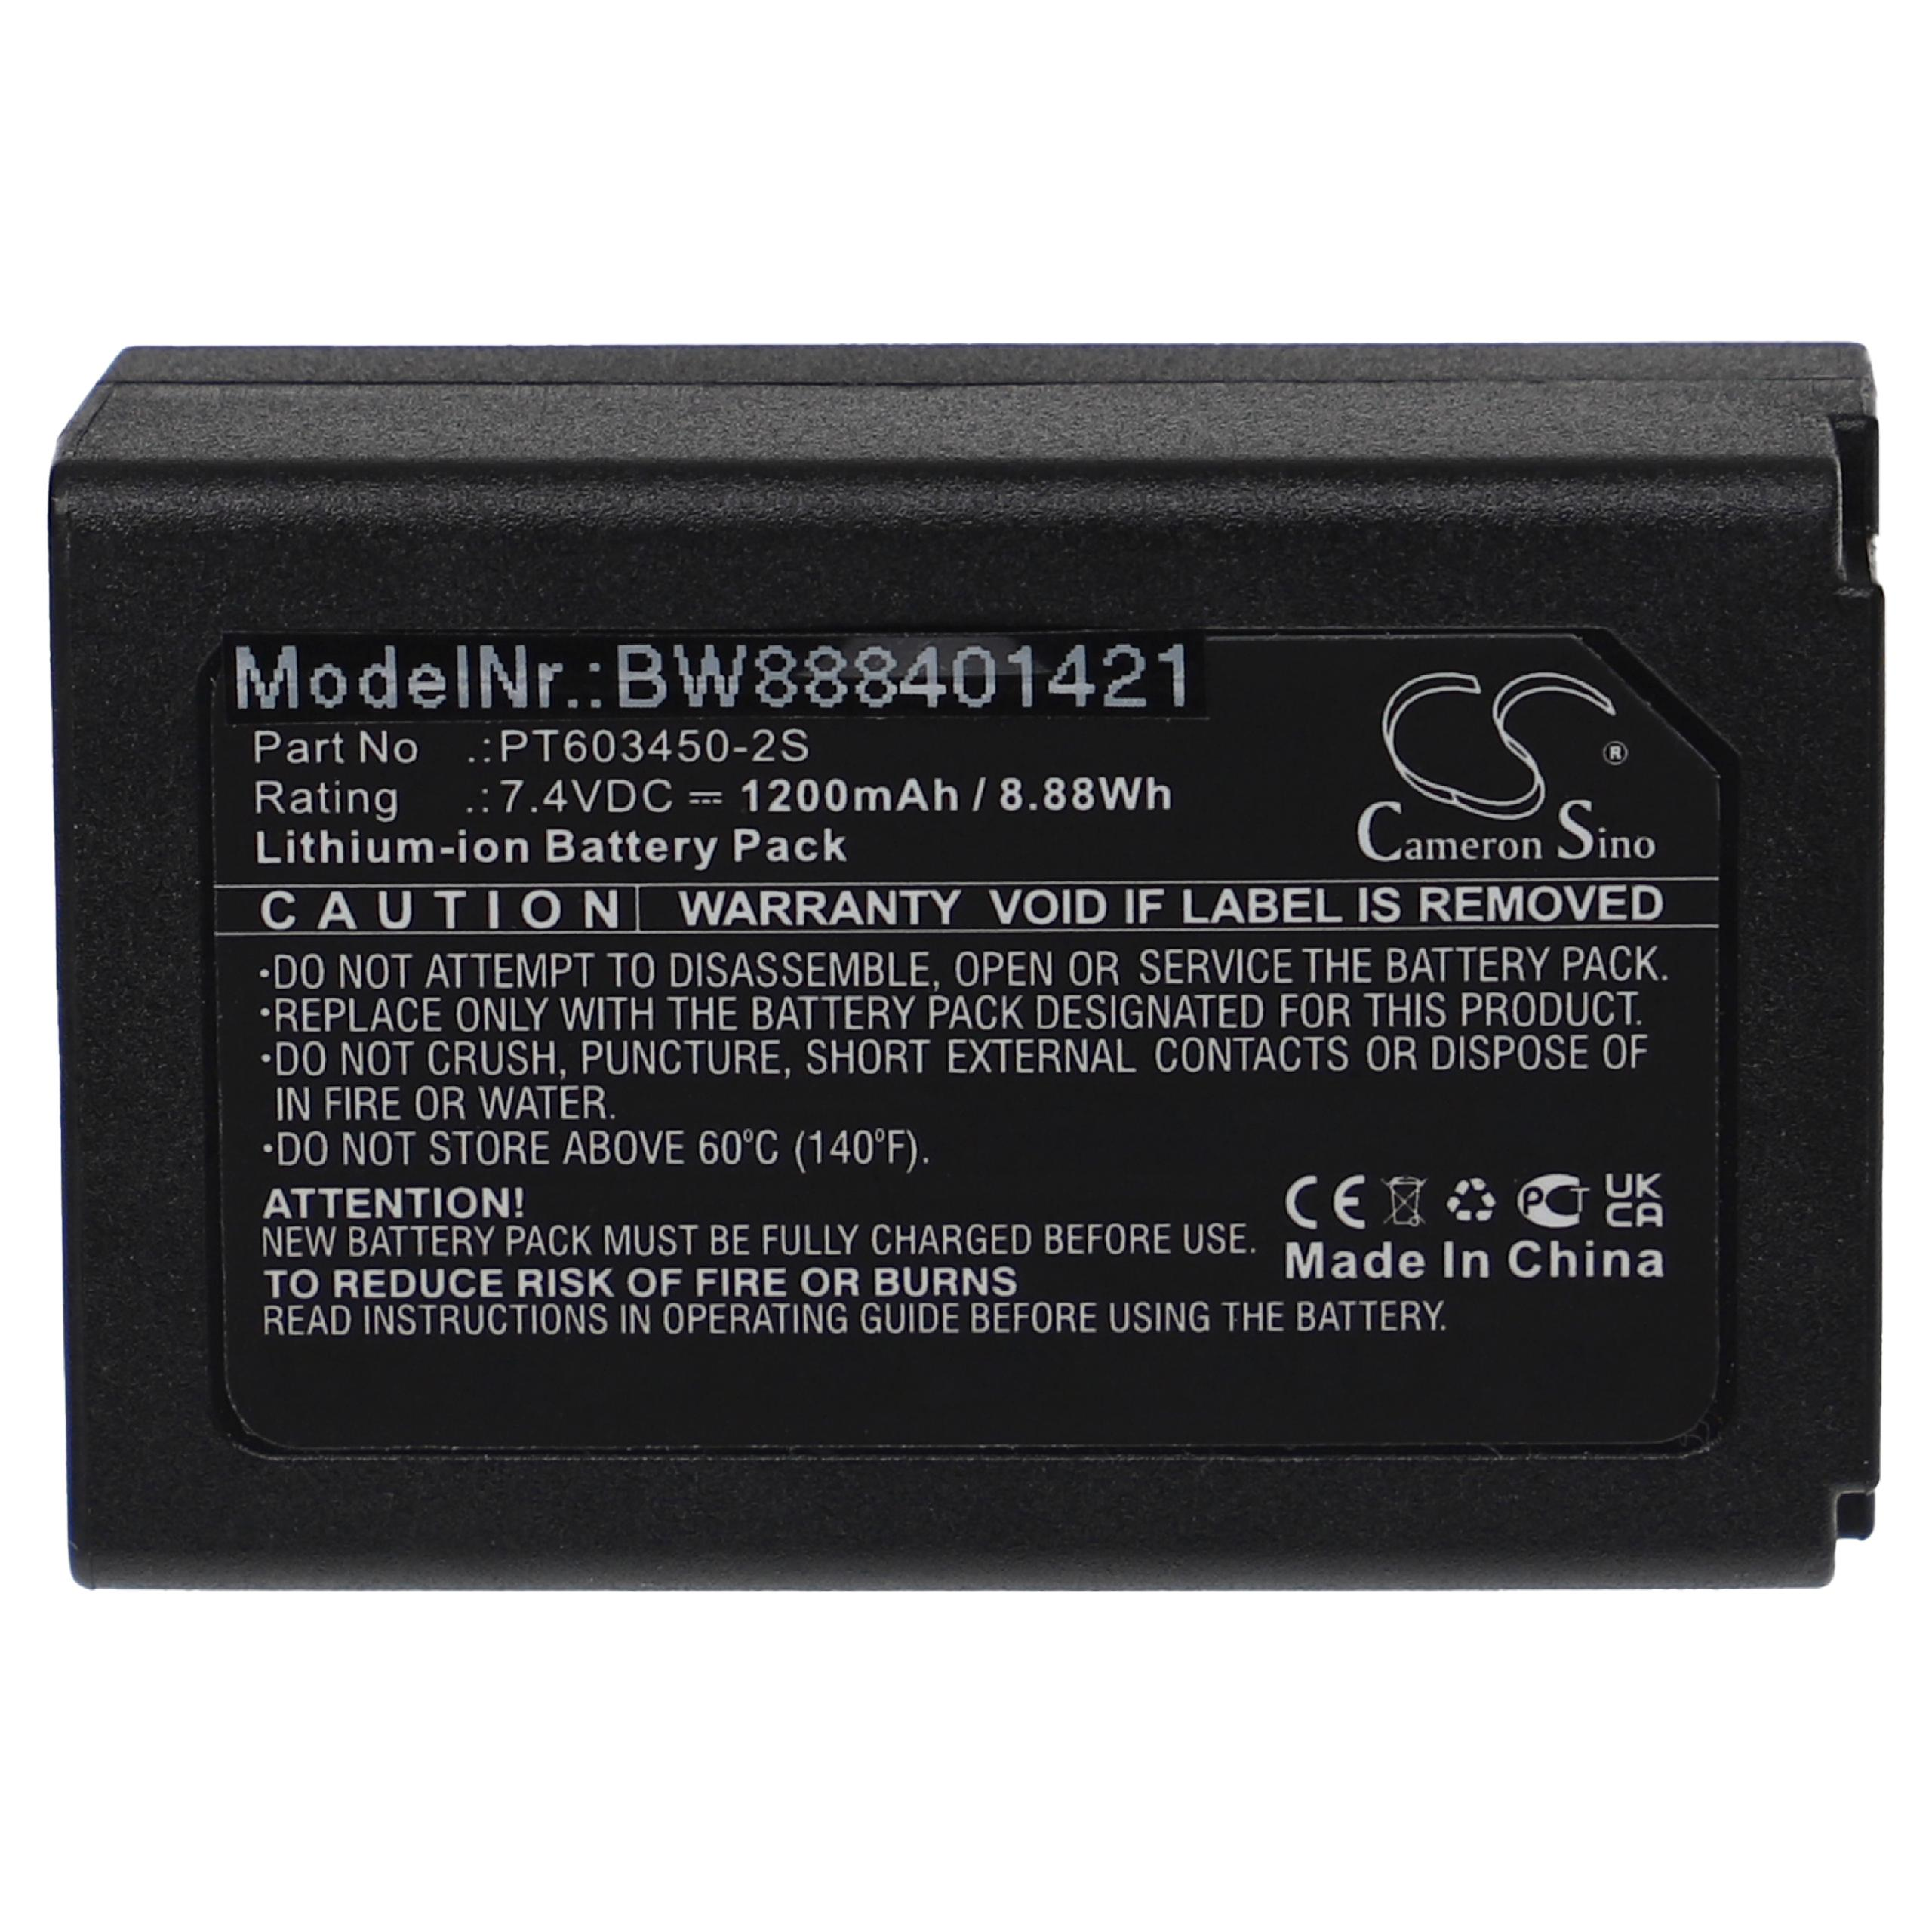 VHBW kompatibel mit CEM DT-9881M, DT-9880, 1200 DT-9883M, 7.4 Messgerät, - Li-Ion Volt, DT-9850M, DT-9880M, DT-9881 Akku